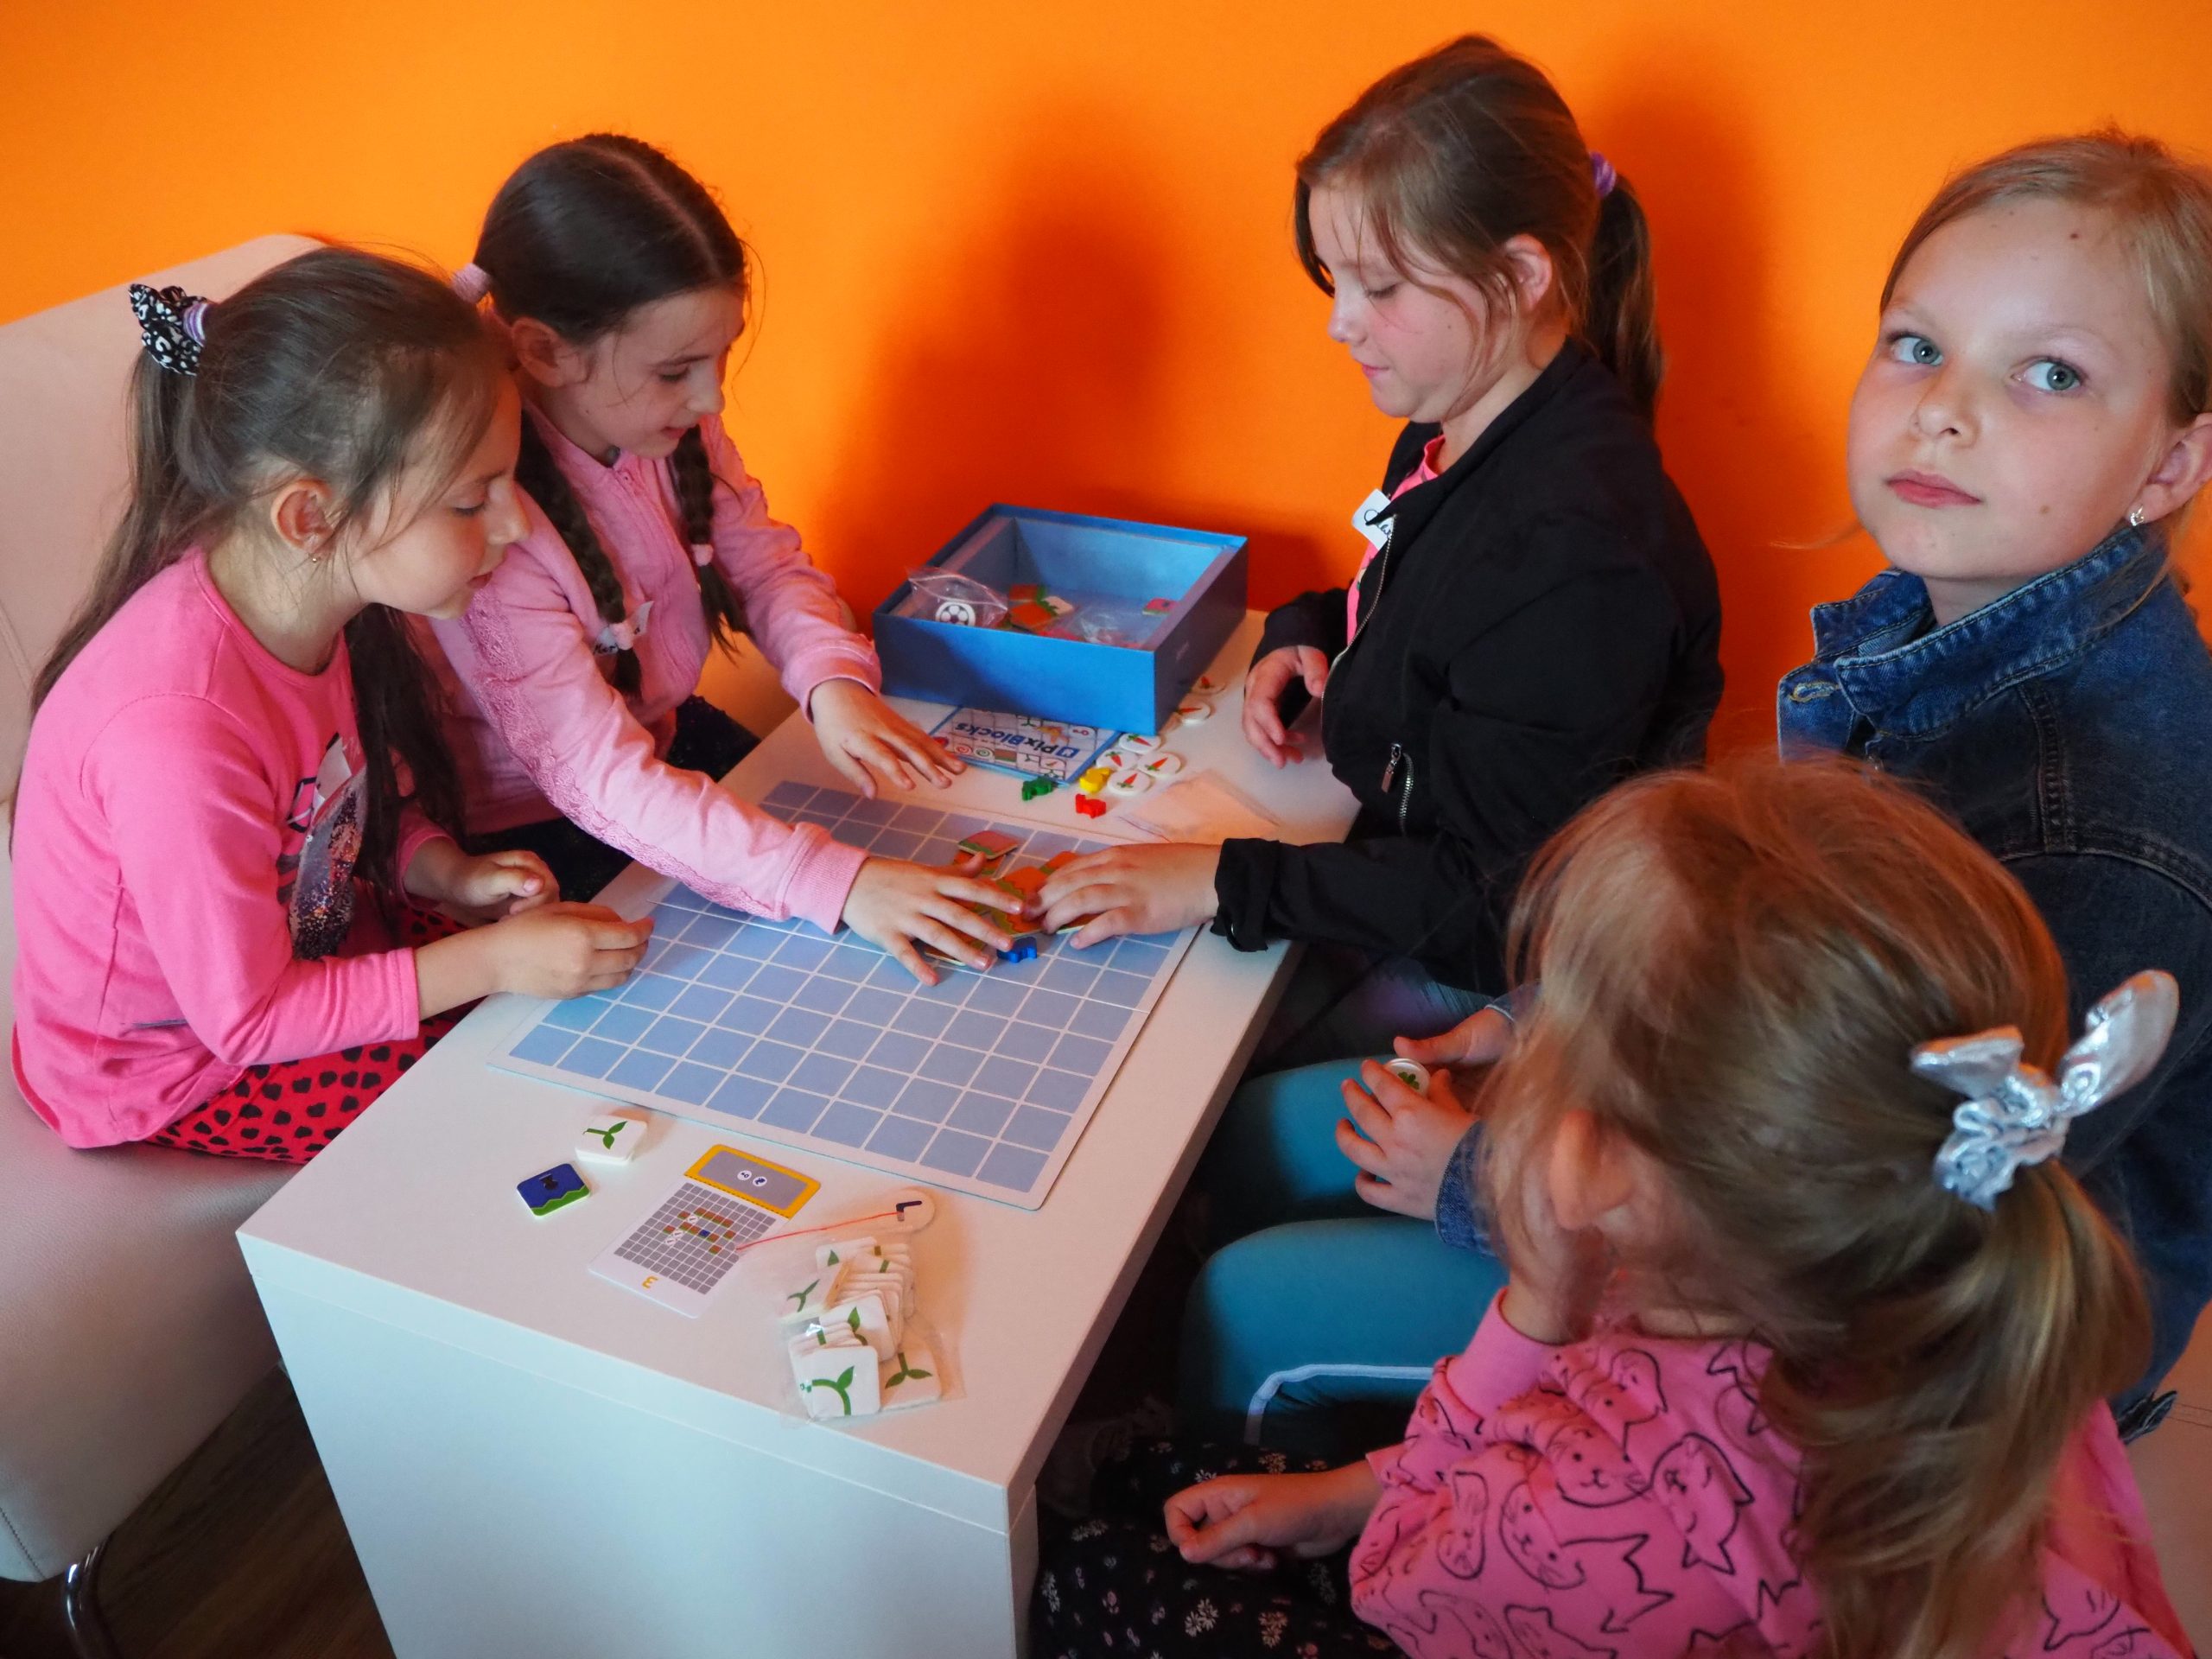 dziewczynki pryz stoliku grają w planszówki podczas zajęć z kodowania